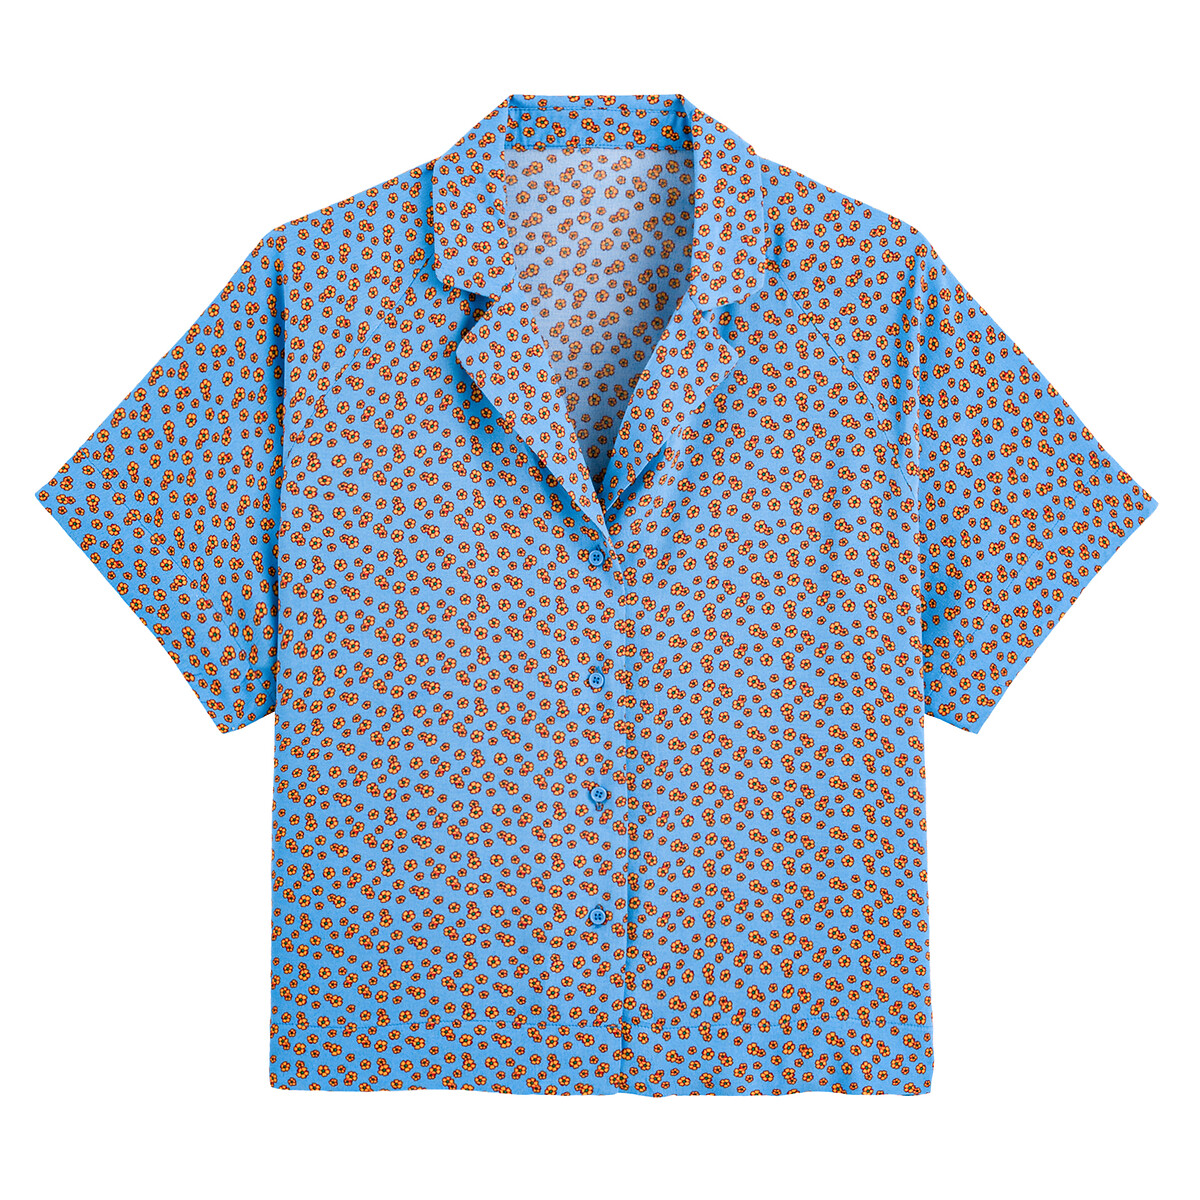 Блузка LA REDOUTE COLLECTIONS С воротником в стиле пижамы и цветочным принтом 44 (FR) - 50 (RUS) синий, размер 44 (FR) - 50 (RUS) С воротником в стиле пижамы и цветочным принтом 44 (FR) - 50 (RUS) синий - фото 5